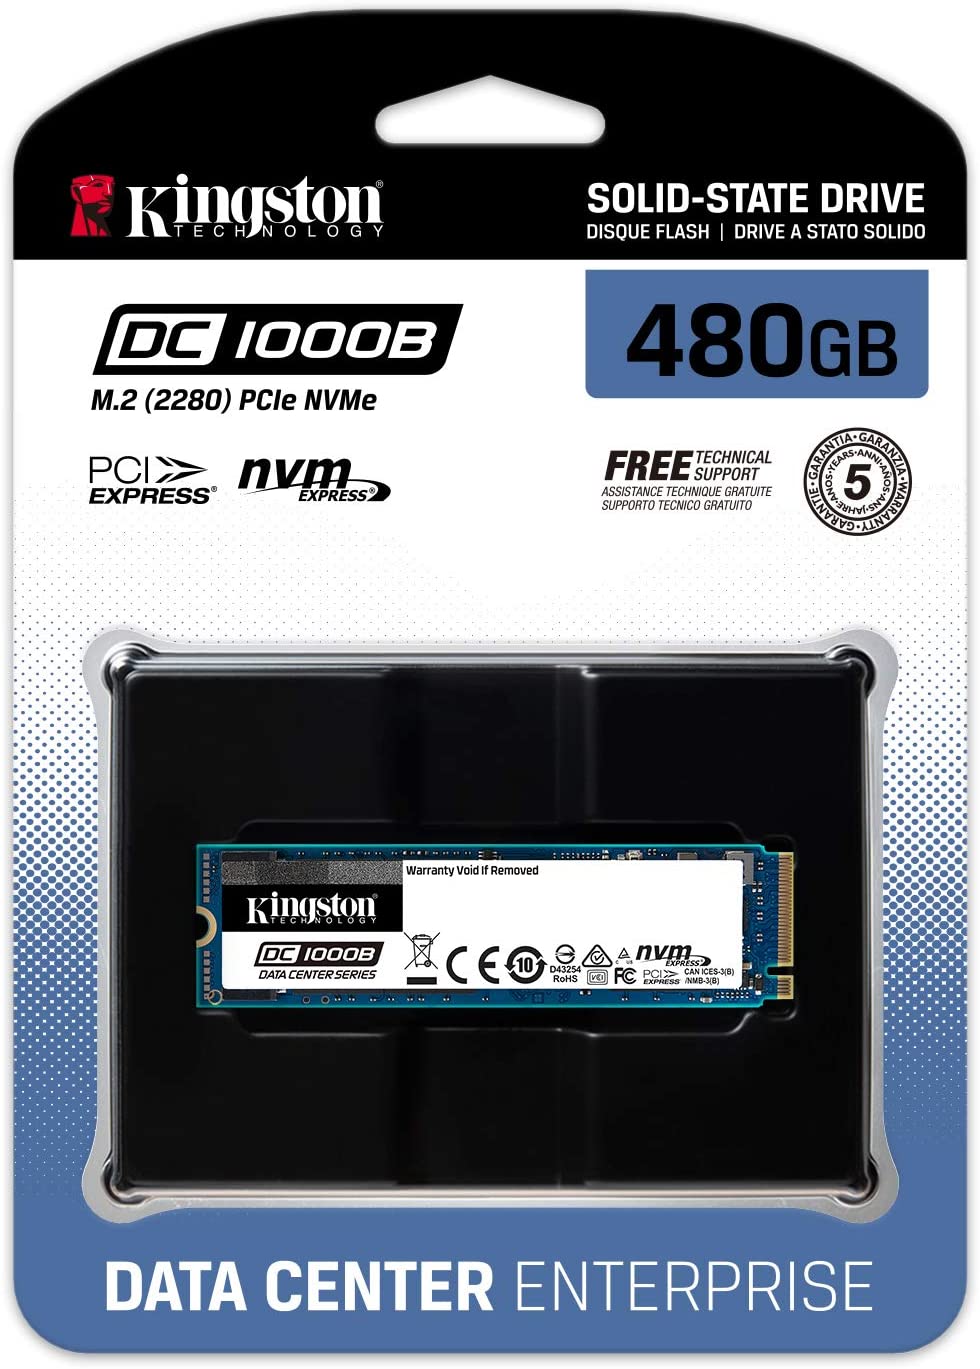 SSD Entreprise Kingston 480G DC1000B M.2 2280 NVME